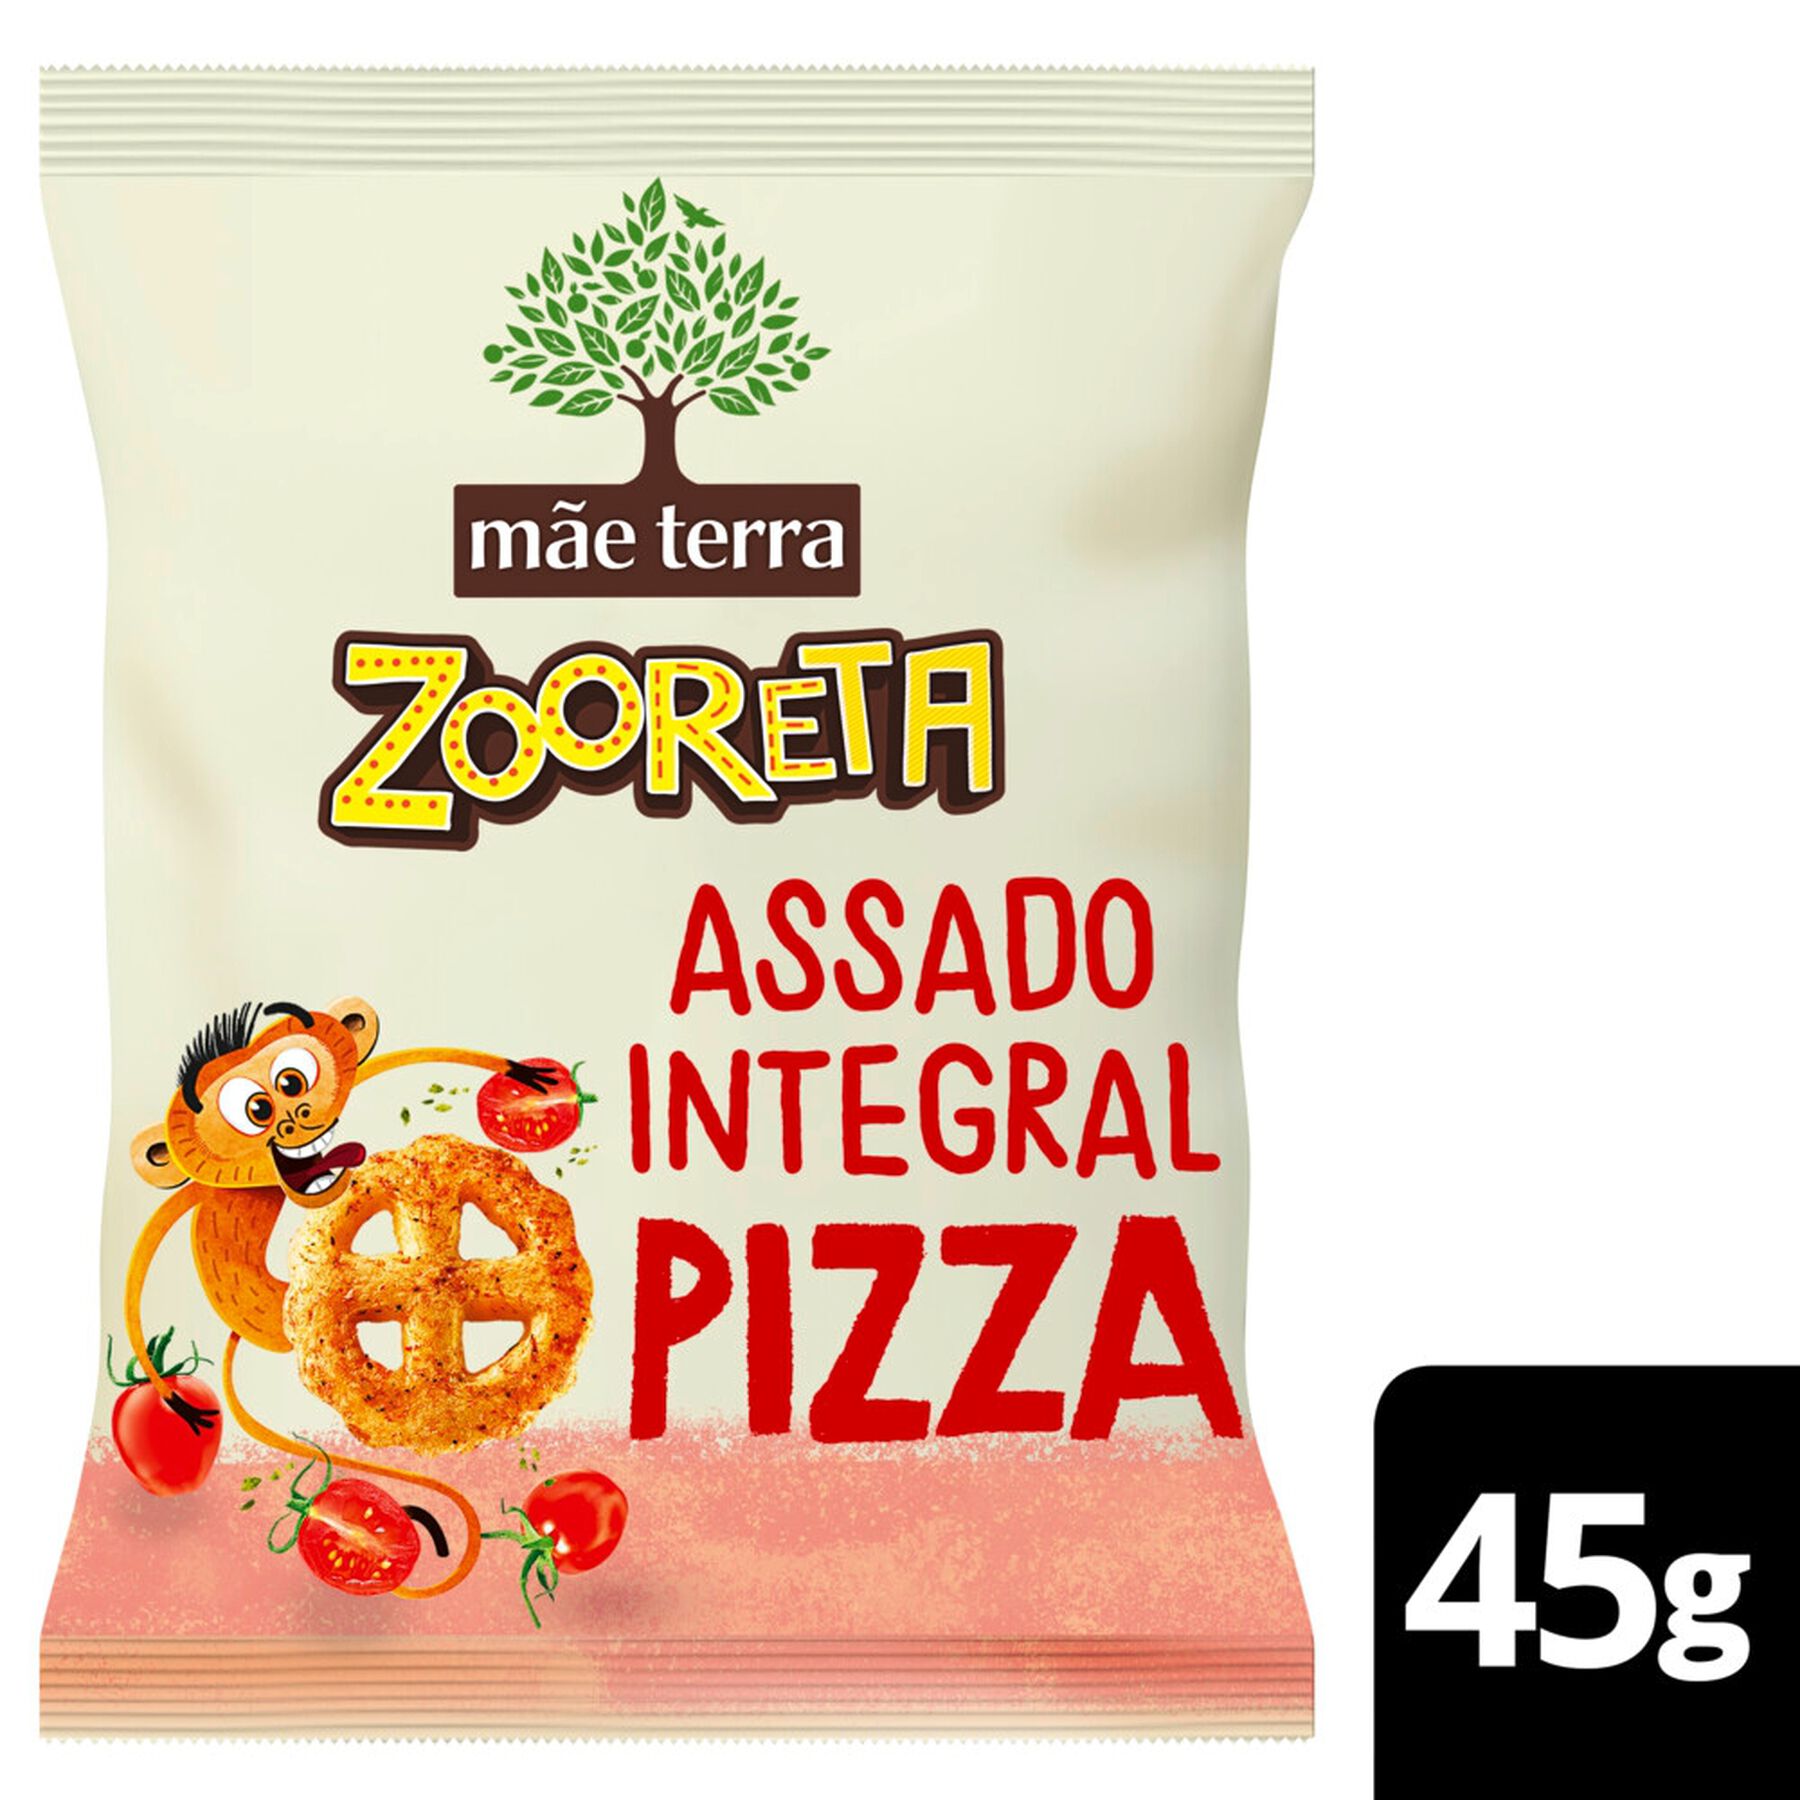 Salgadinho de Milho e Arroz Integral Orgânico Pizza Mãe Terra Zooreta Pacote 45g